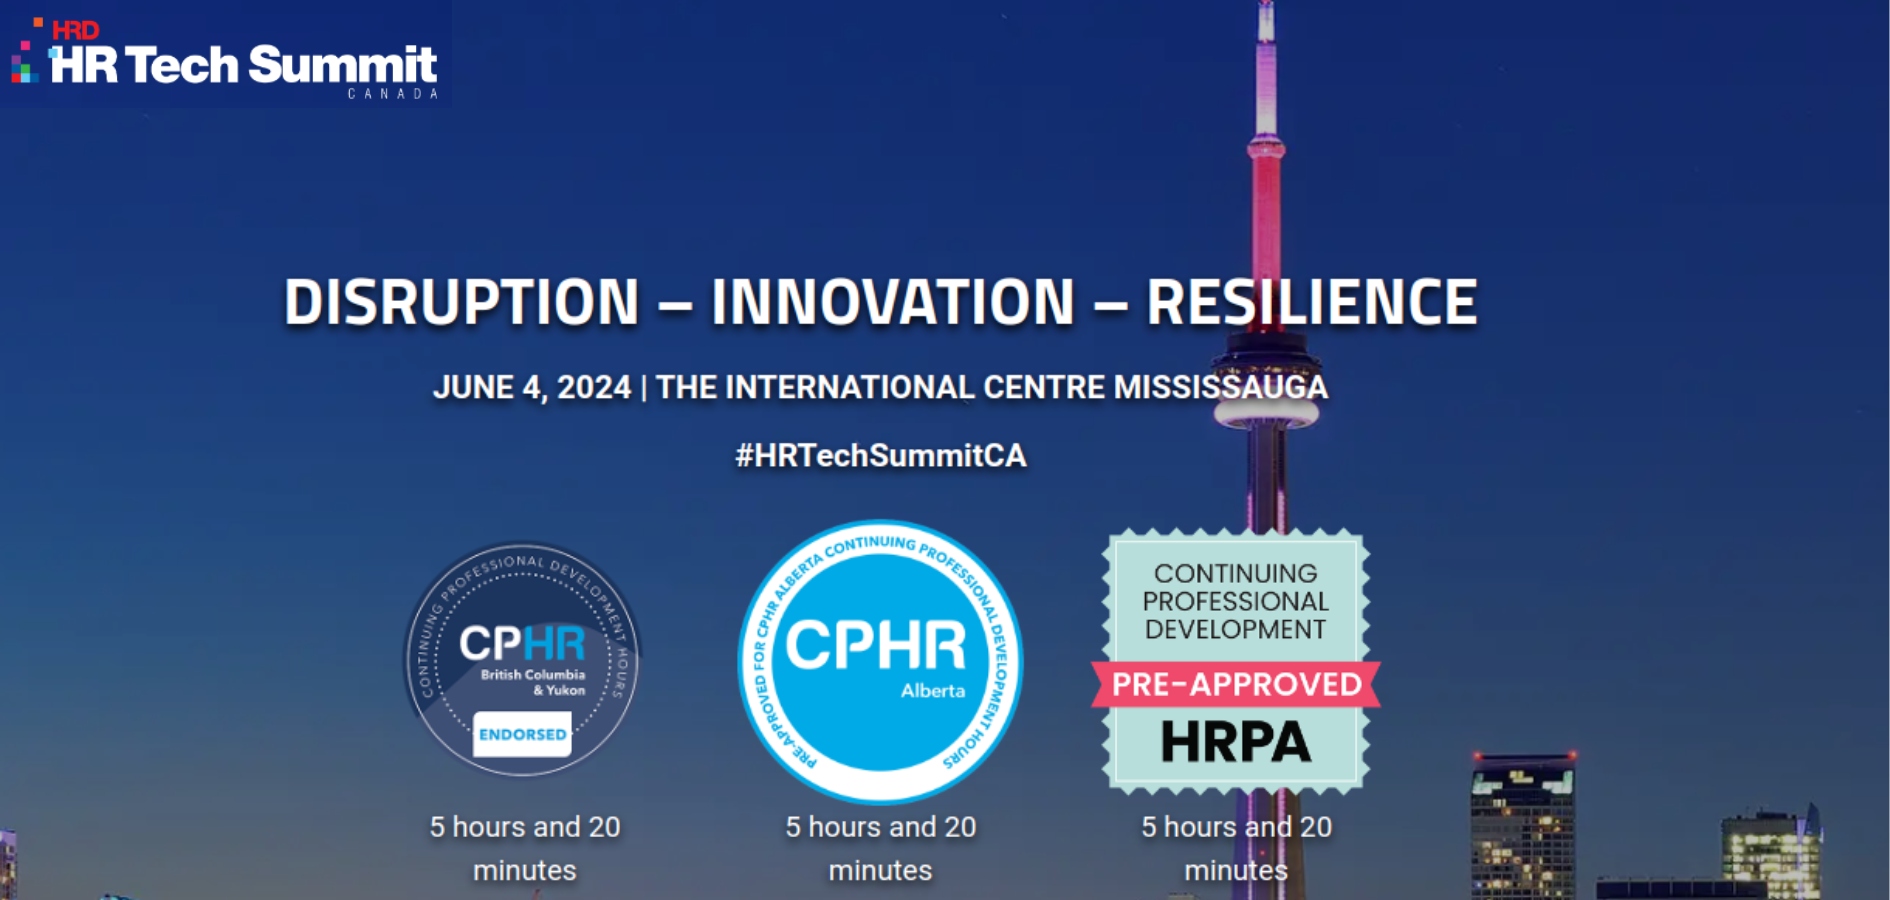     HR Tech Summit Canada 2024